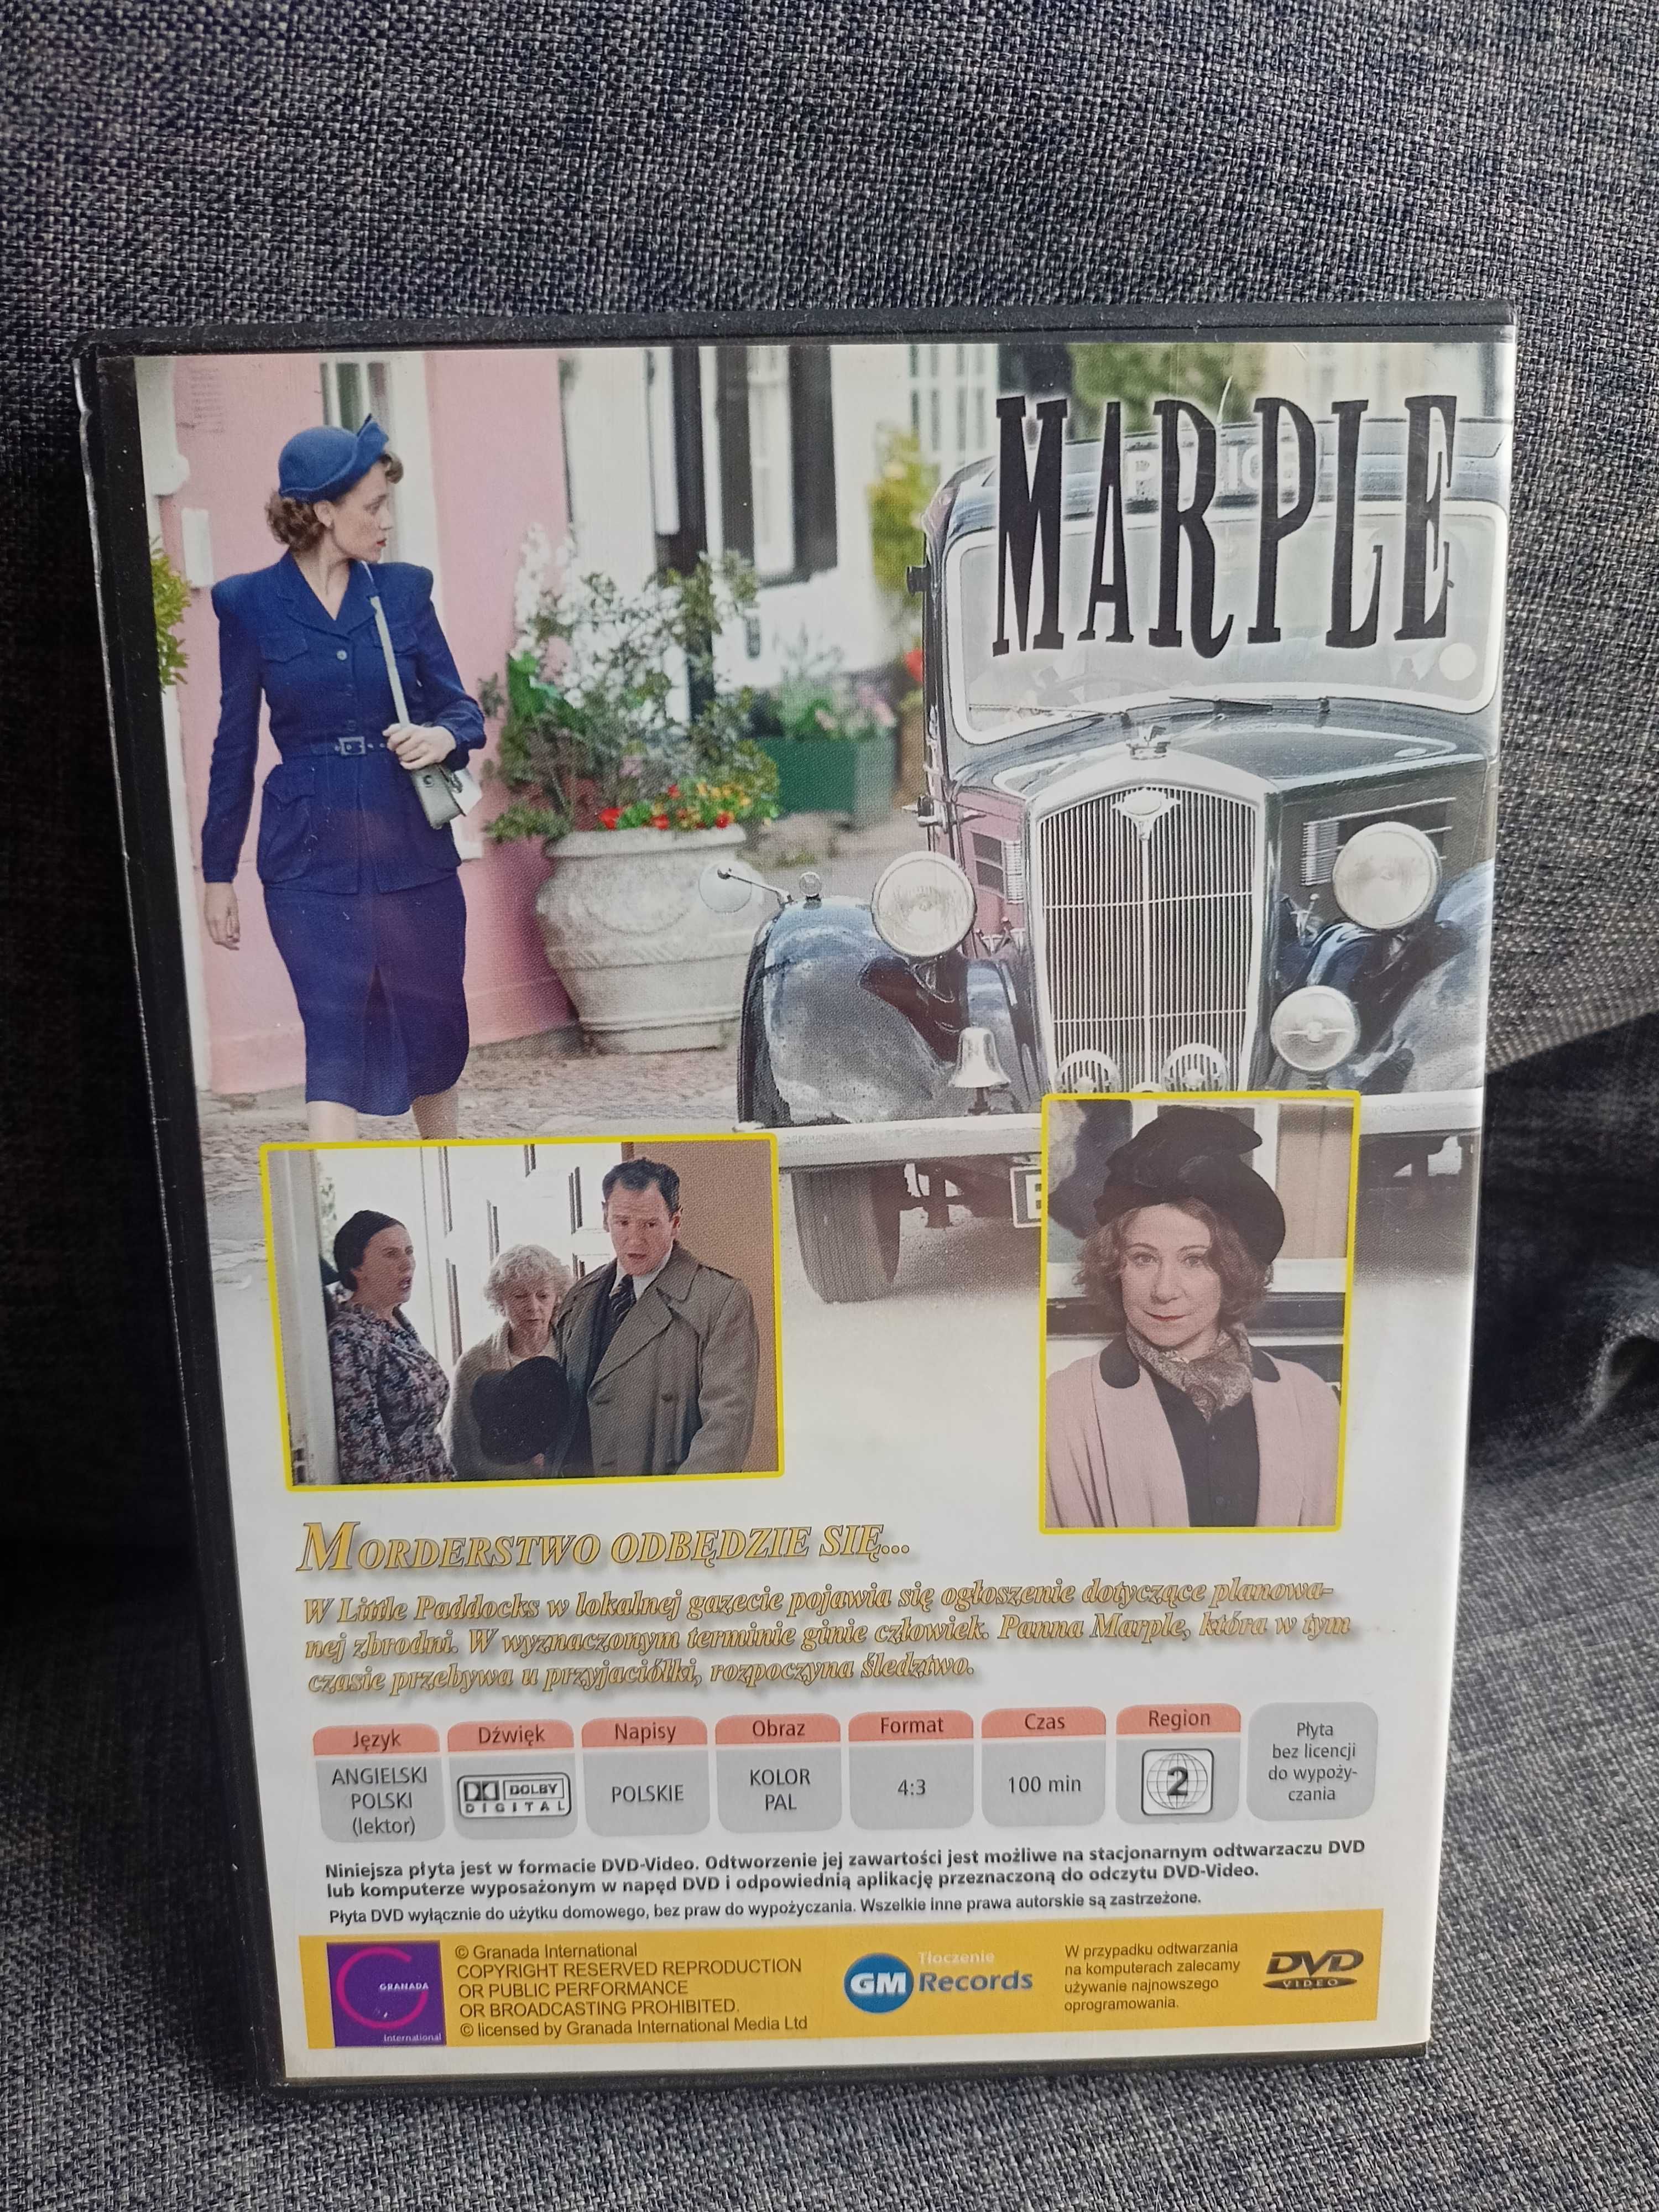 DVD Marple 4. Morderstwo odbędzie się...